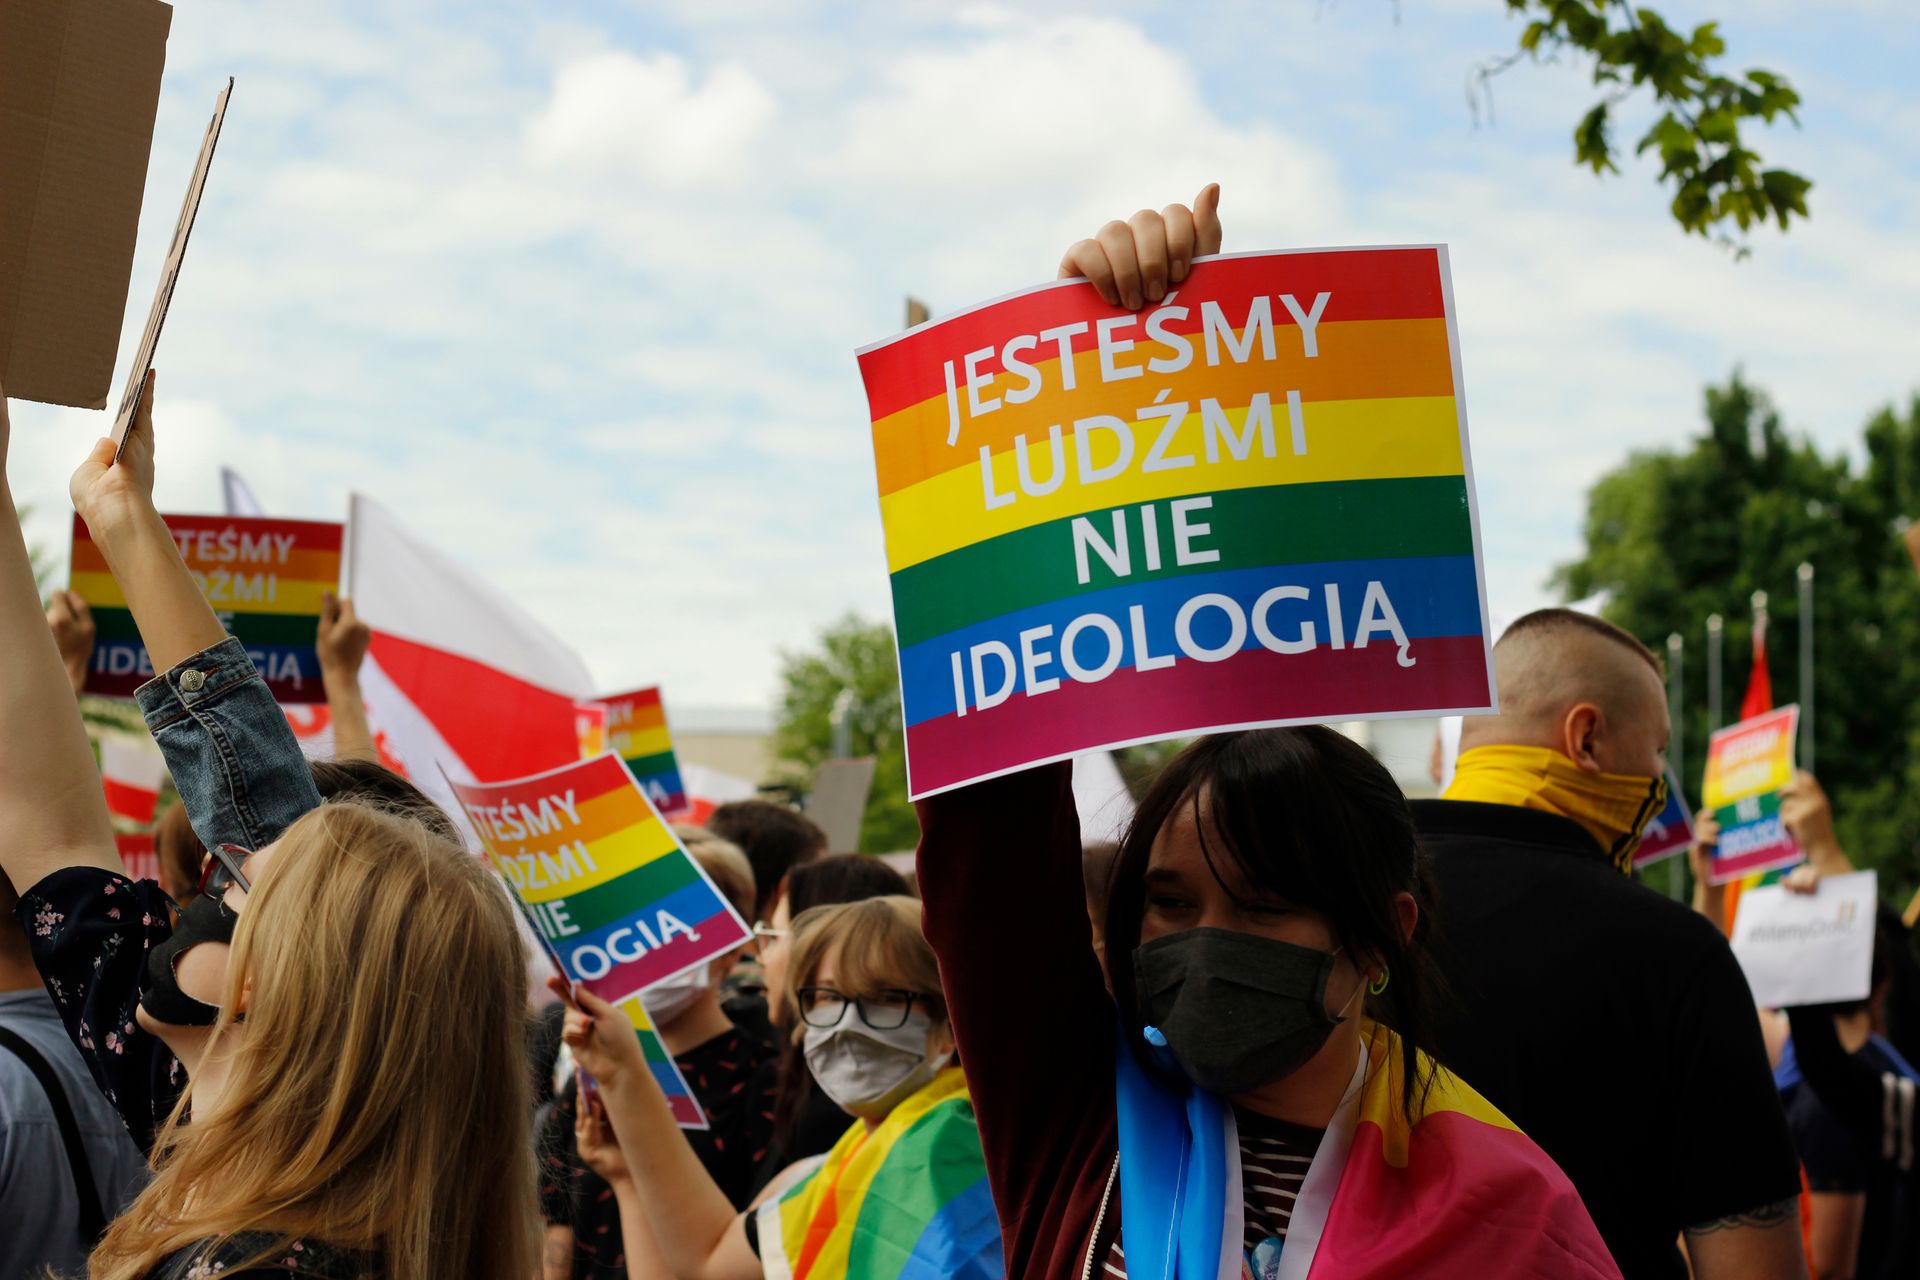 Polonia aviva el odio homofóbico mientras comparan el ser gay con el ser nazi